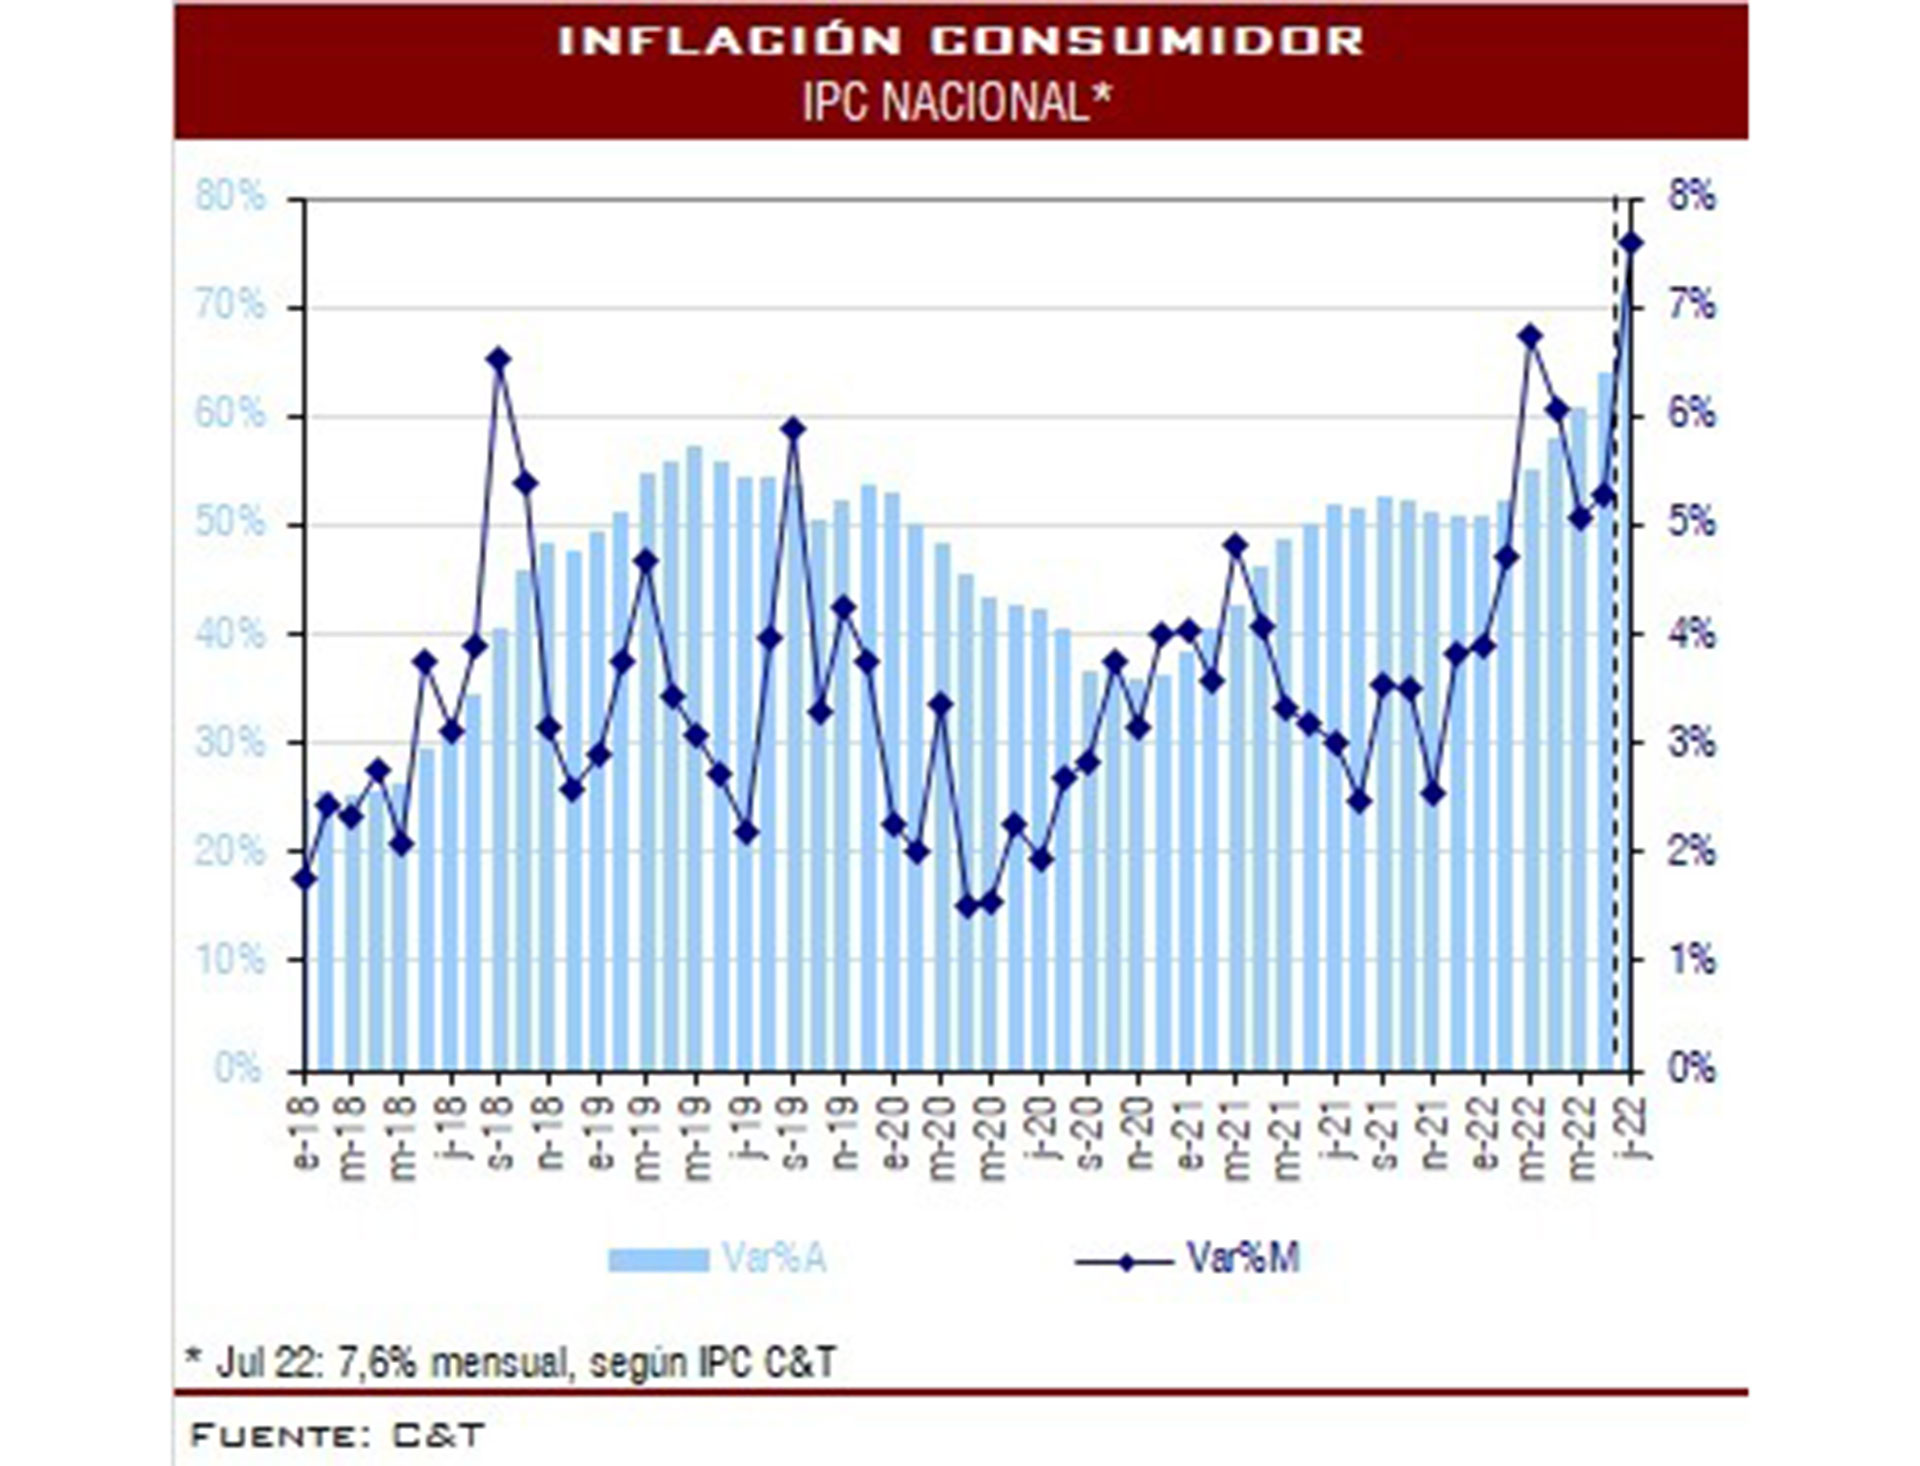 La evolución de la inflación en julio
Fuente: C&T
